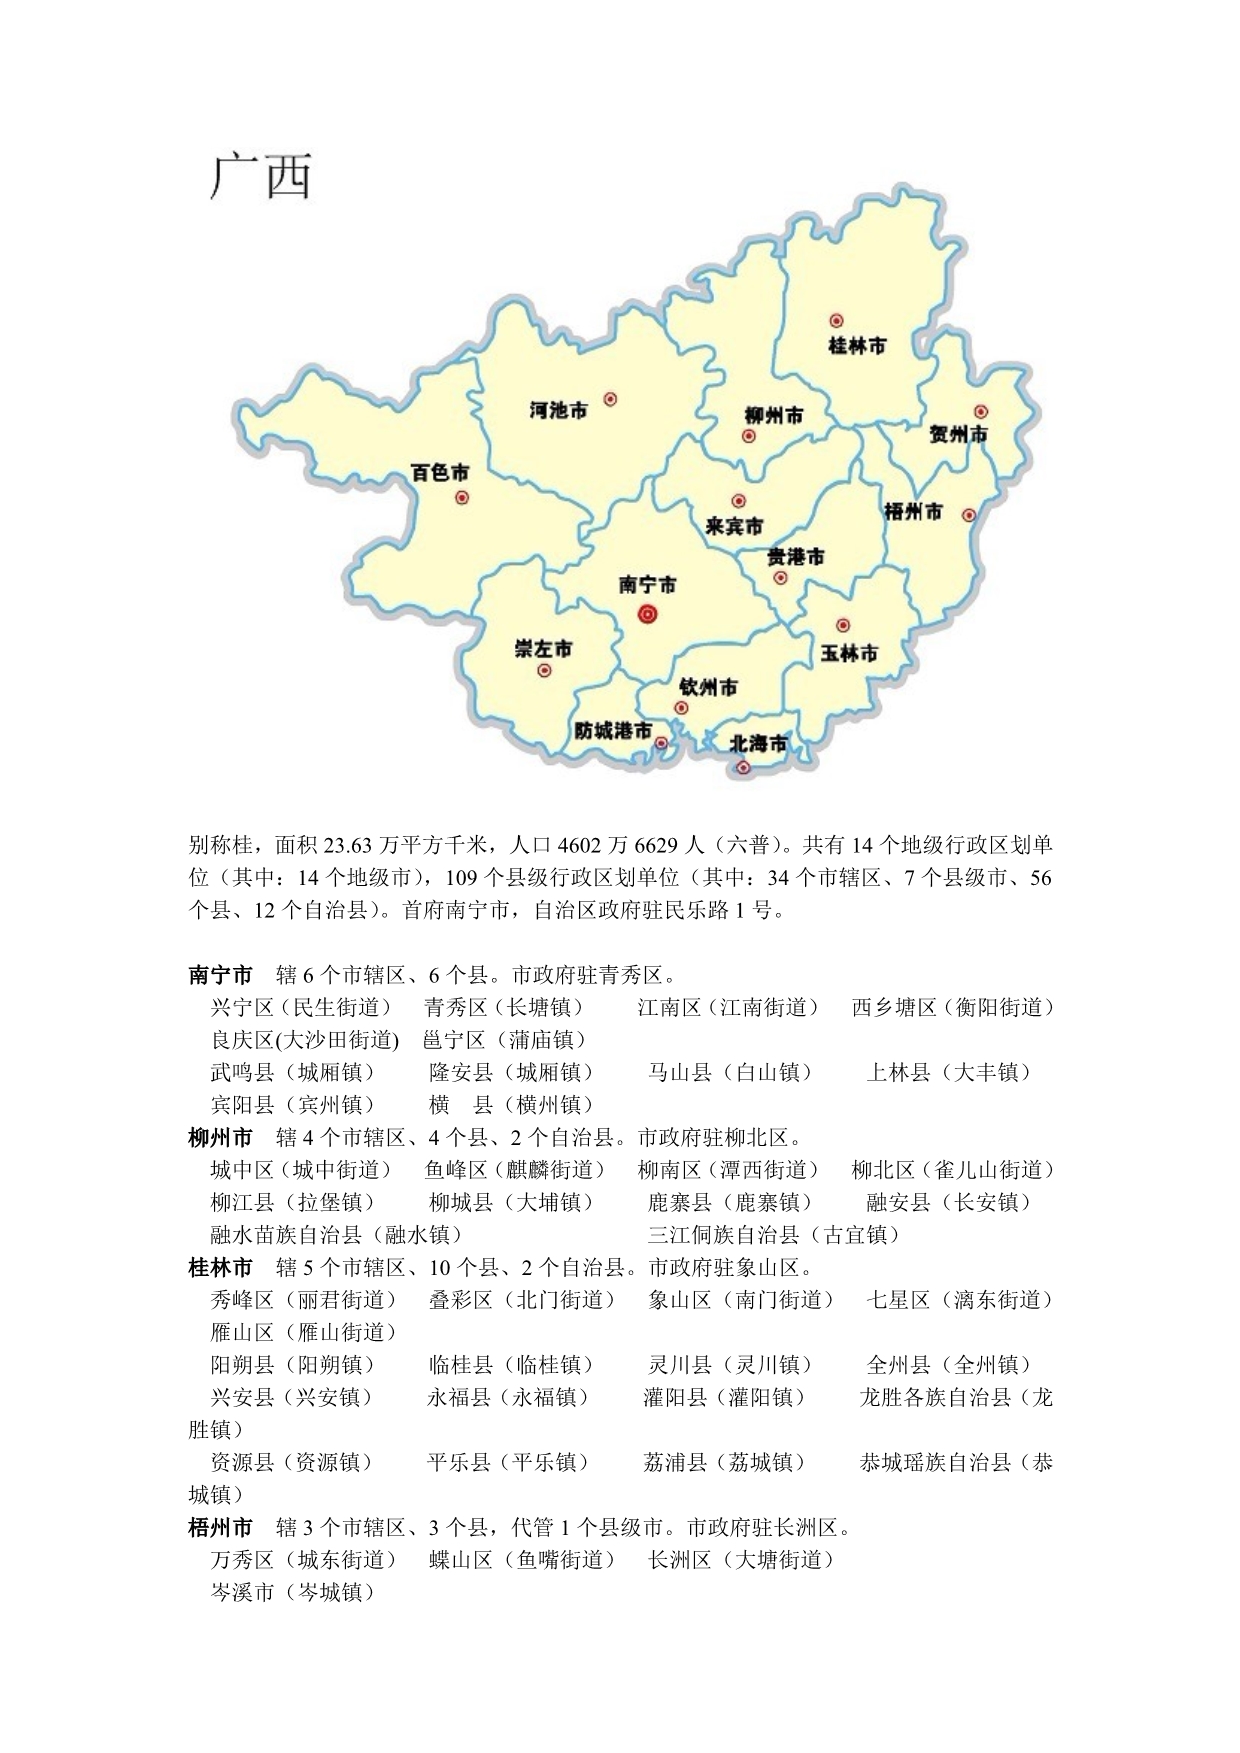 广西地图及行区划